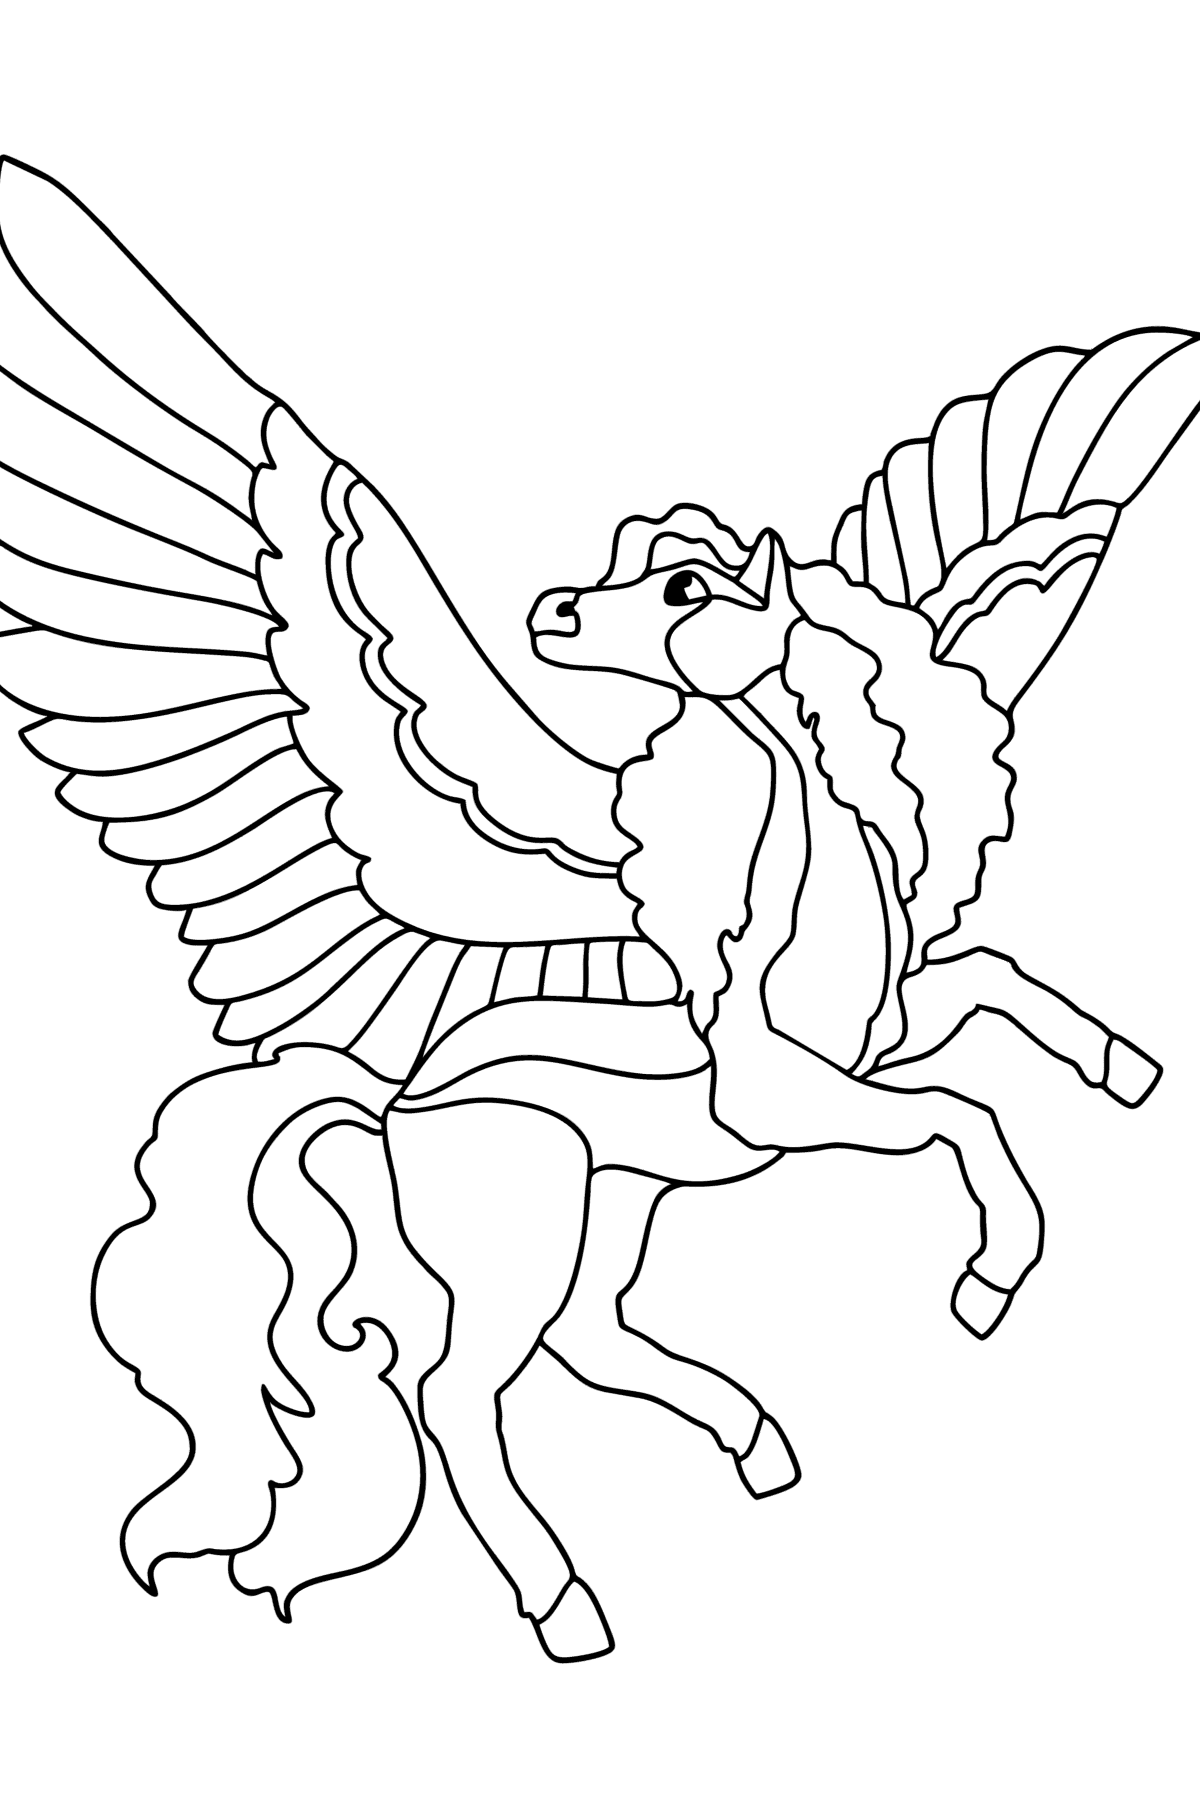 Kleurplaat Pegasus met roze vleugels - kleurplaten voor kinderen